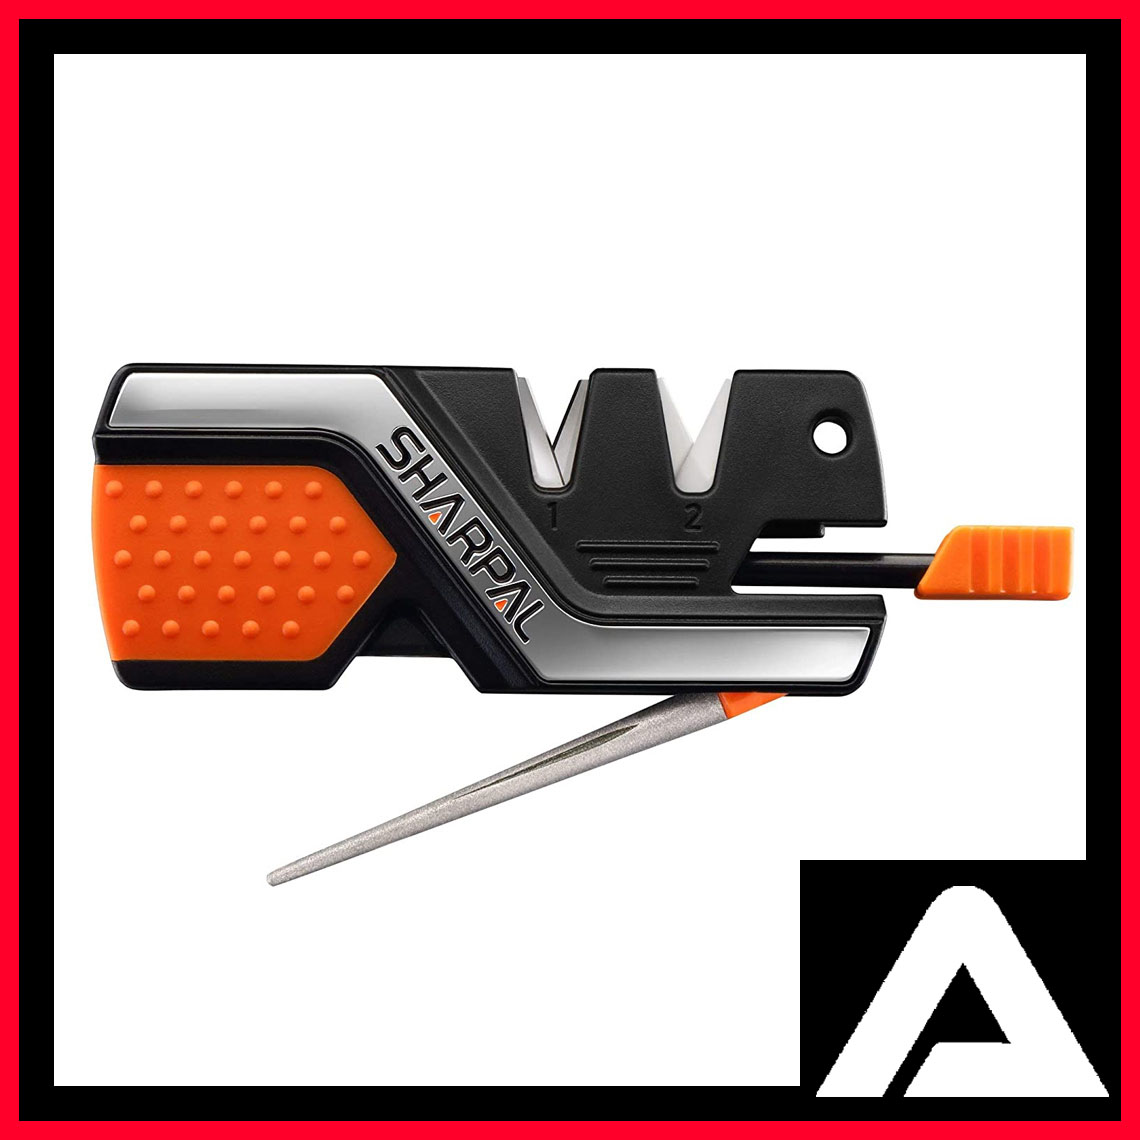 Sharpal 6-in-1 Knife Sharpener & Survival Tool